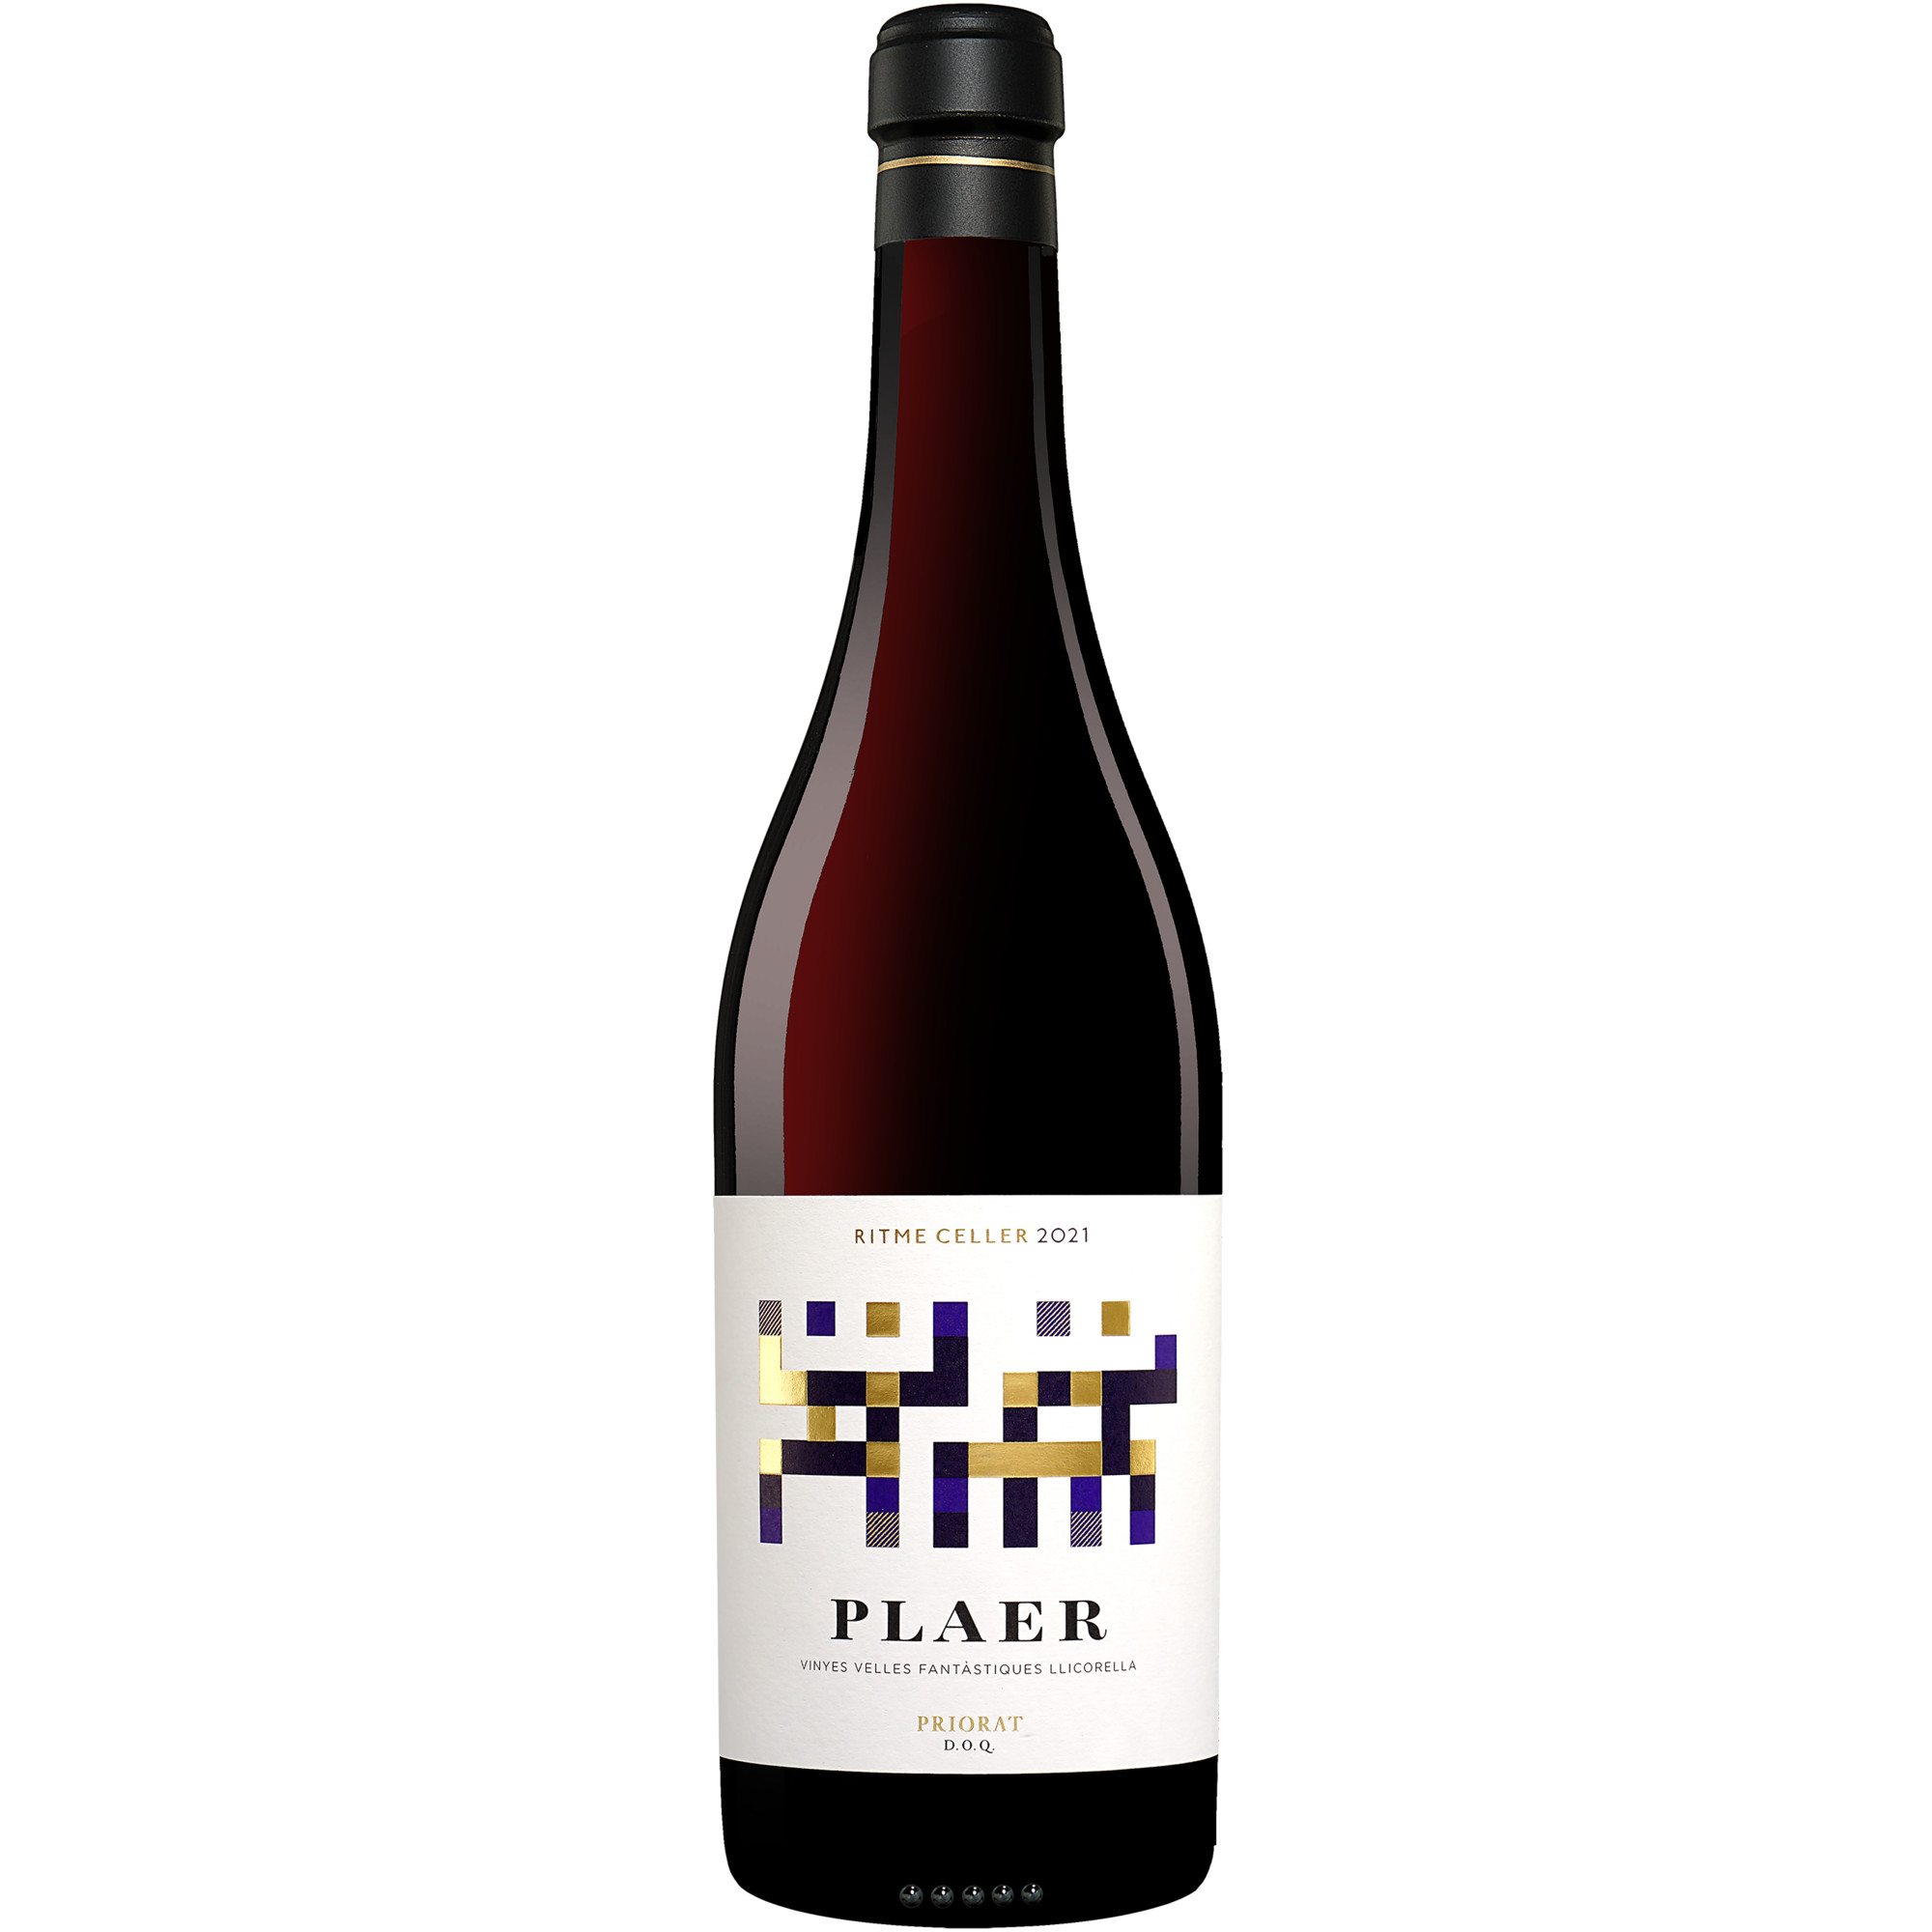 Ritme »Plaer« 2021  015% Vol. Rotwein Trocken aus Spanien